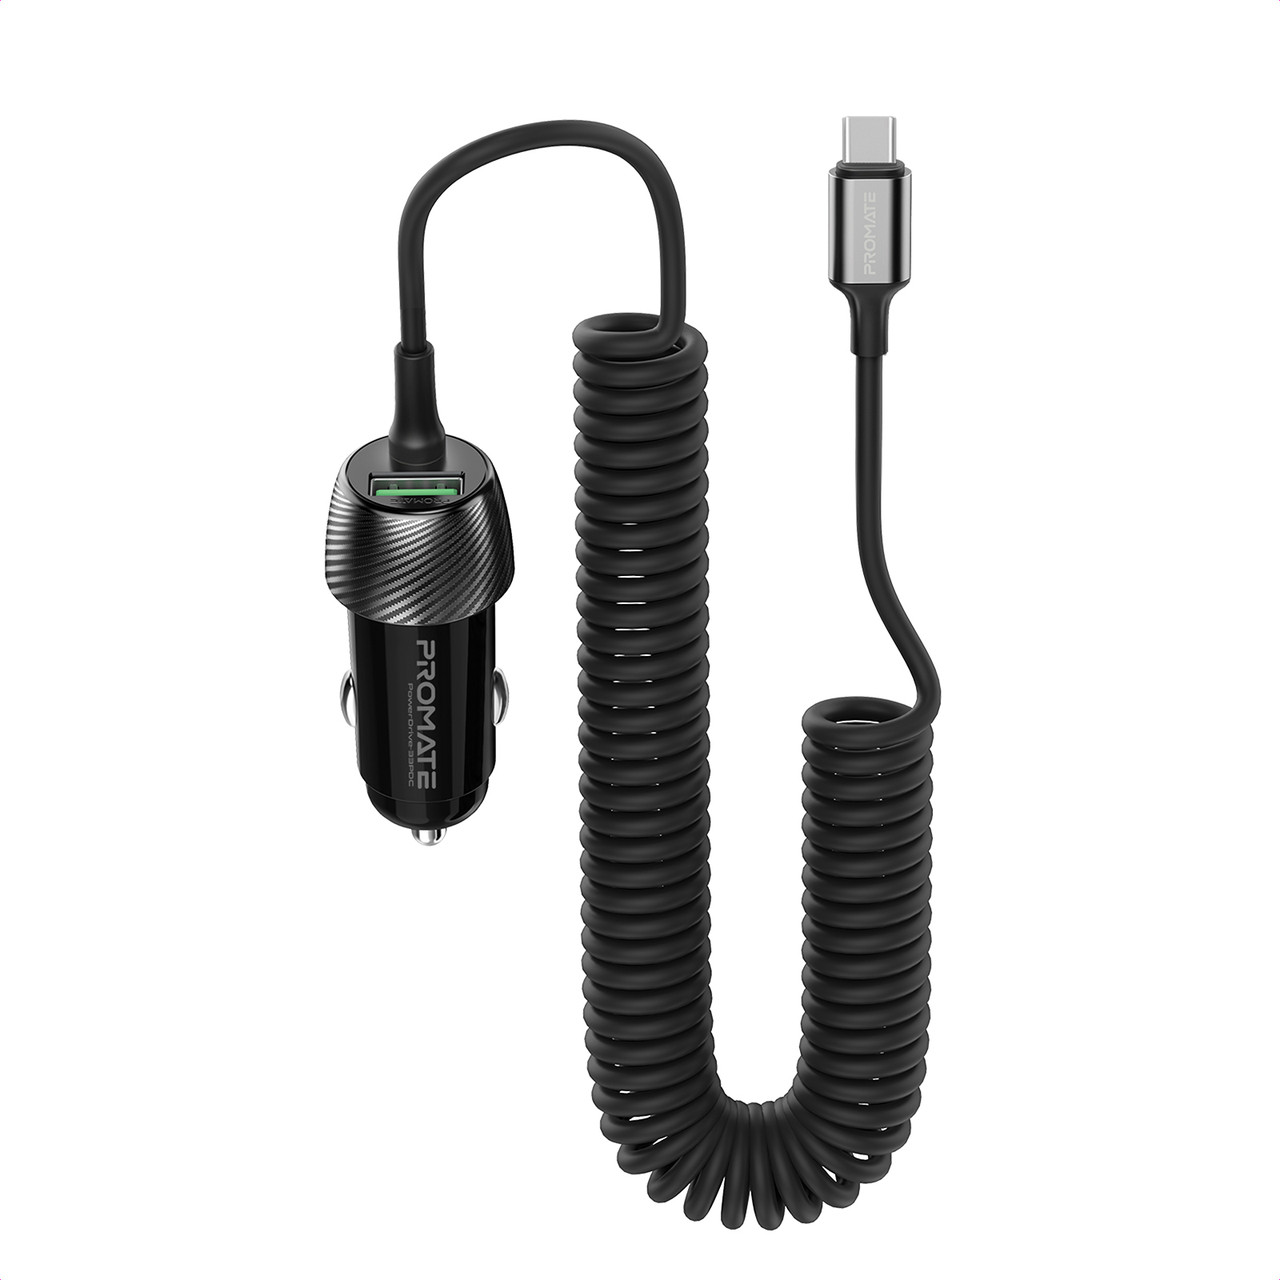 Автомобільний зарядний пристрій Promate PowerDrive-33PDC, 33 Вт, USB-C кабель + USB-A порт Black (powerdrive-33pdc.black)